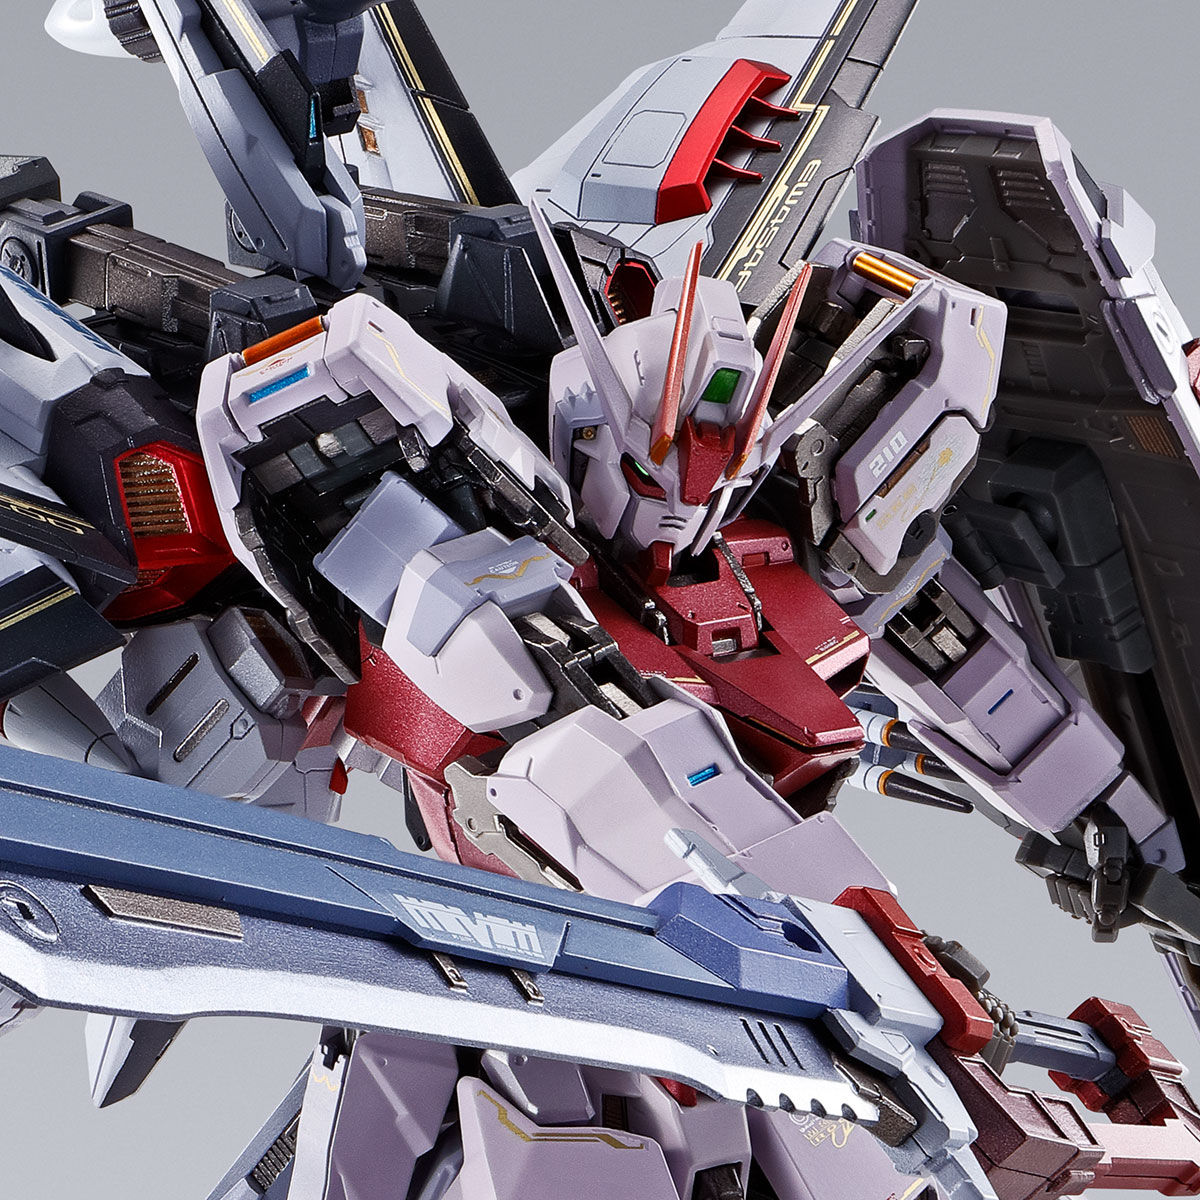 Metal Build MBF-02 Strike Rouge Gundam + EW454F Ootori Striker